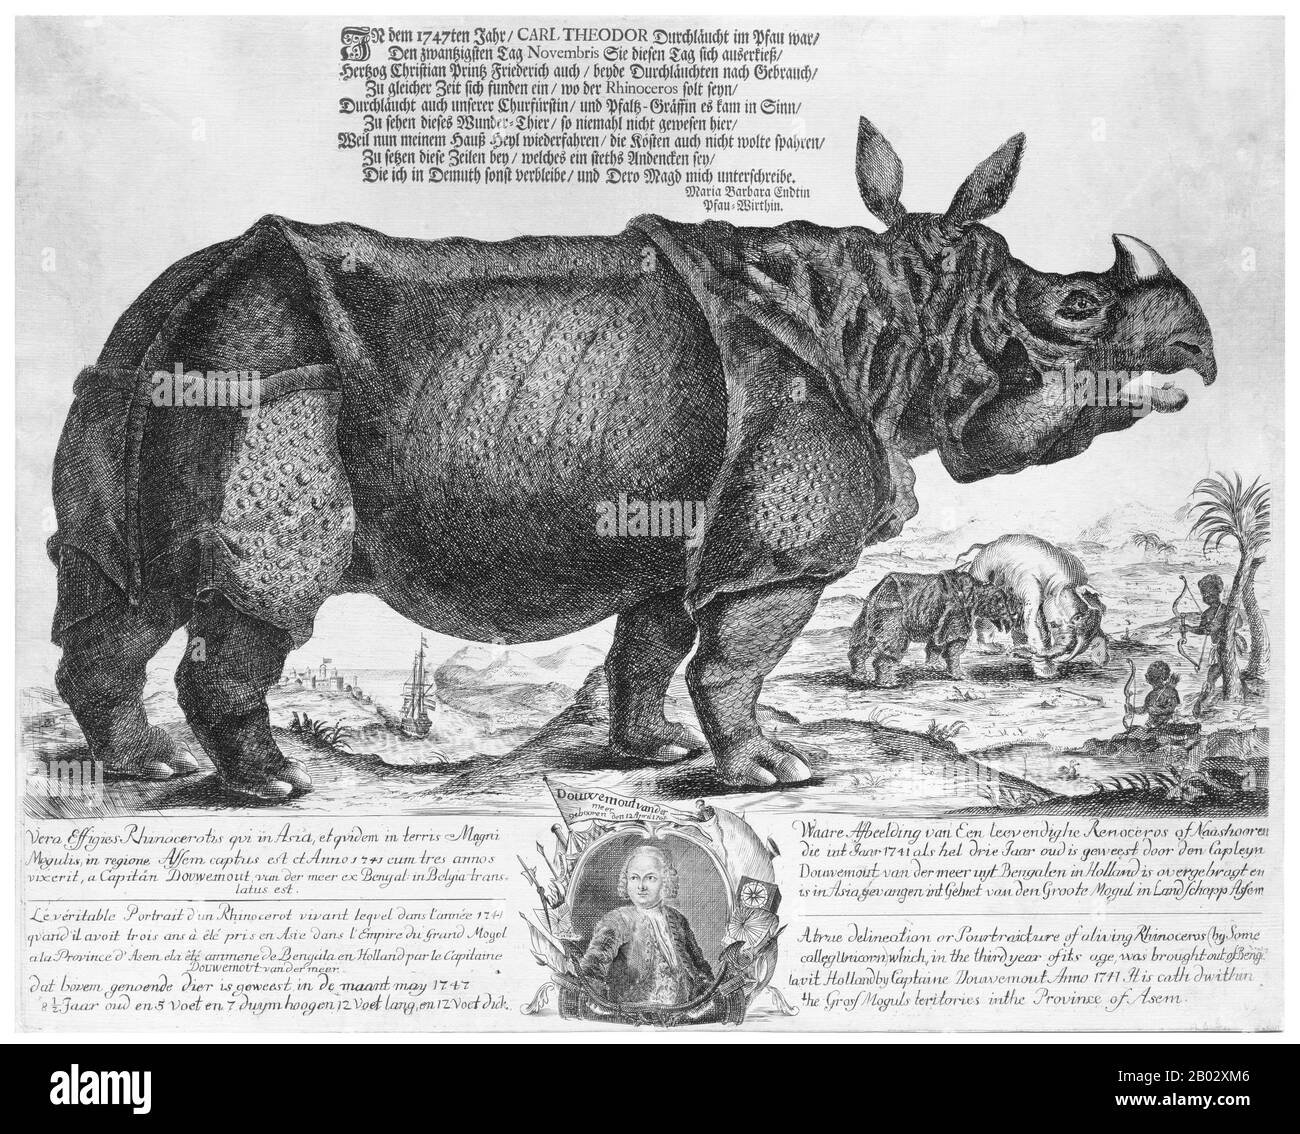 Le rhinocéros indien, ou plus grand rhinocéros à une horne, (Rhinoceros unicornis) a une corne unique de 20 à 100 cm de long. Il est presque aussi grand que le rhinocéros blanc africain. Sa peau épaisse et marron argent forme d'énormes plis sur tout le corps. Ses jambes supérieures et ses épaules sont recouvertes de bosses semblables à la verrue, et il a très peu de cheveux de corps. Les mâles adultes sont plus grands que les femelles dans la nature, pesant entre 2 500 et 3 200 kg (5 500 et 7 100 lb). La hauteur des épaules est comprise entre 1,75 et 2,0 m (5,75 et 6,5 pi). Les femelles pèsent environ 1 900 kg et mesurent de 3 à 4 m de long. L'échantillon de taille record était d'environ 3 800 kg. Les rhinocéros indiens étaient autrefois habités Banque D'Images